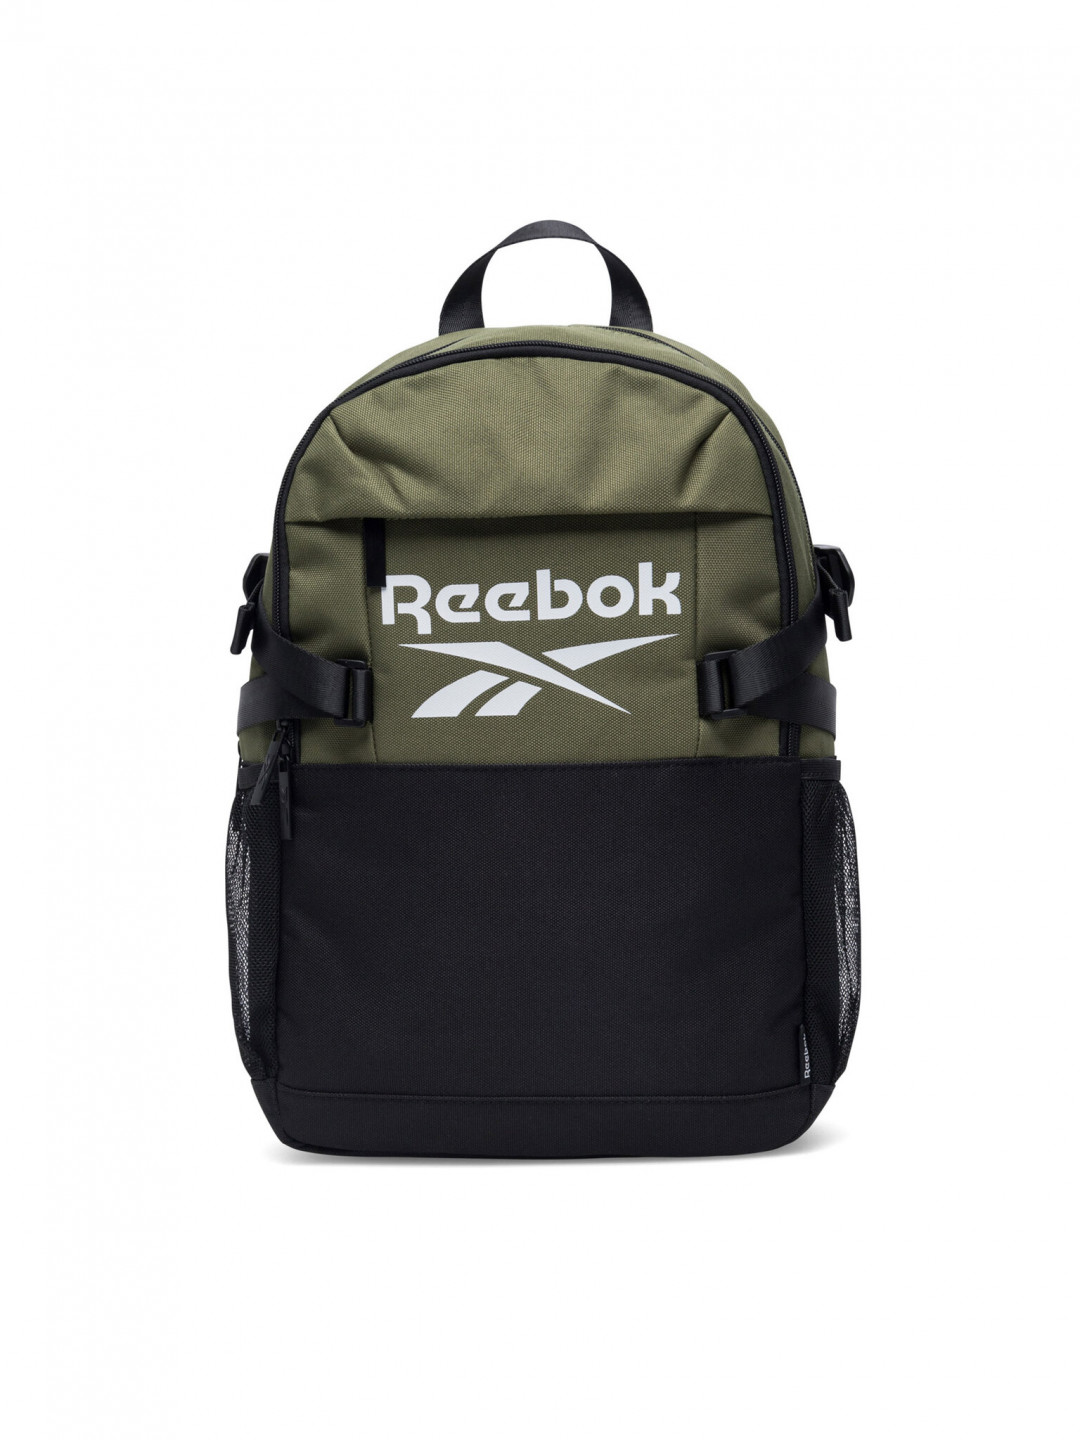 Reebok Batoh RBK-025-CCC-05 Khaki